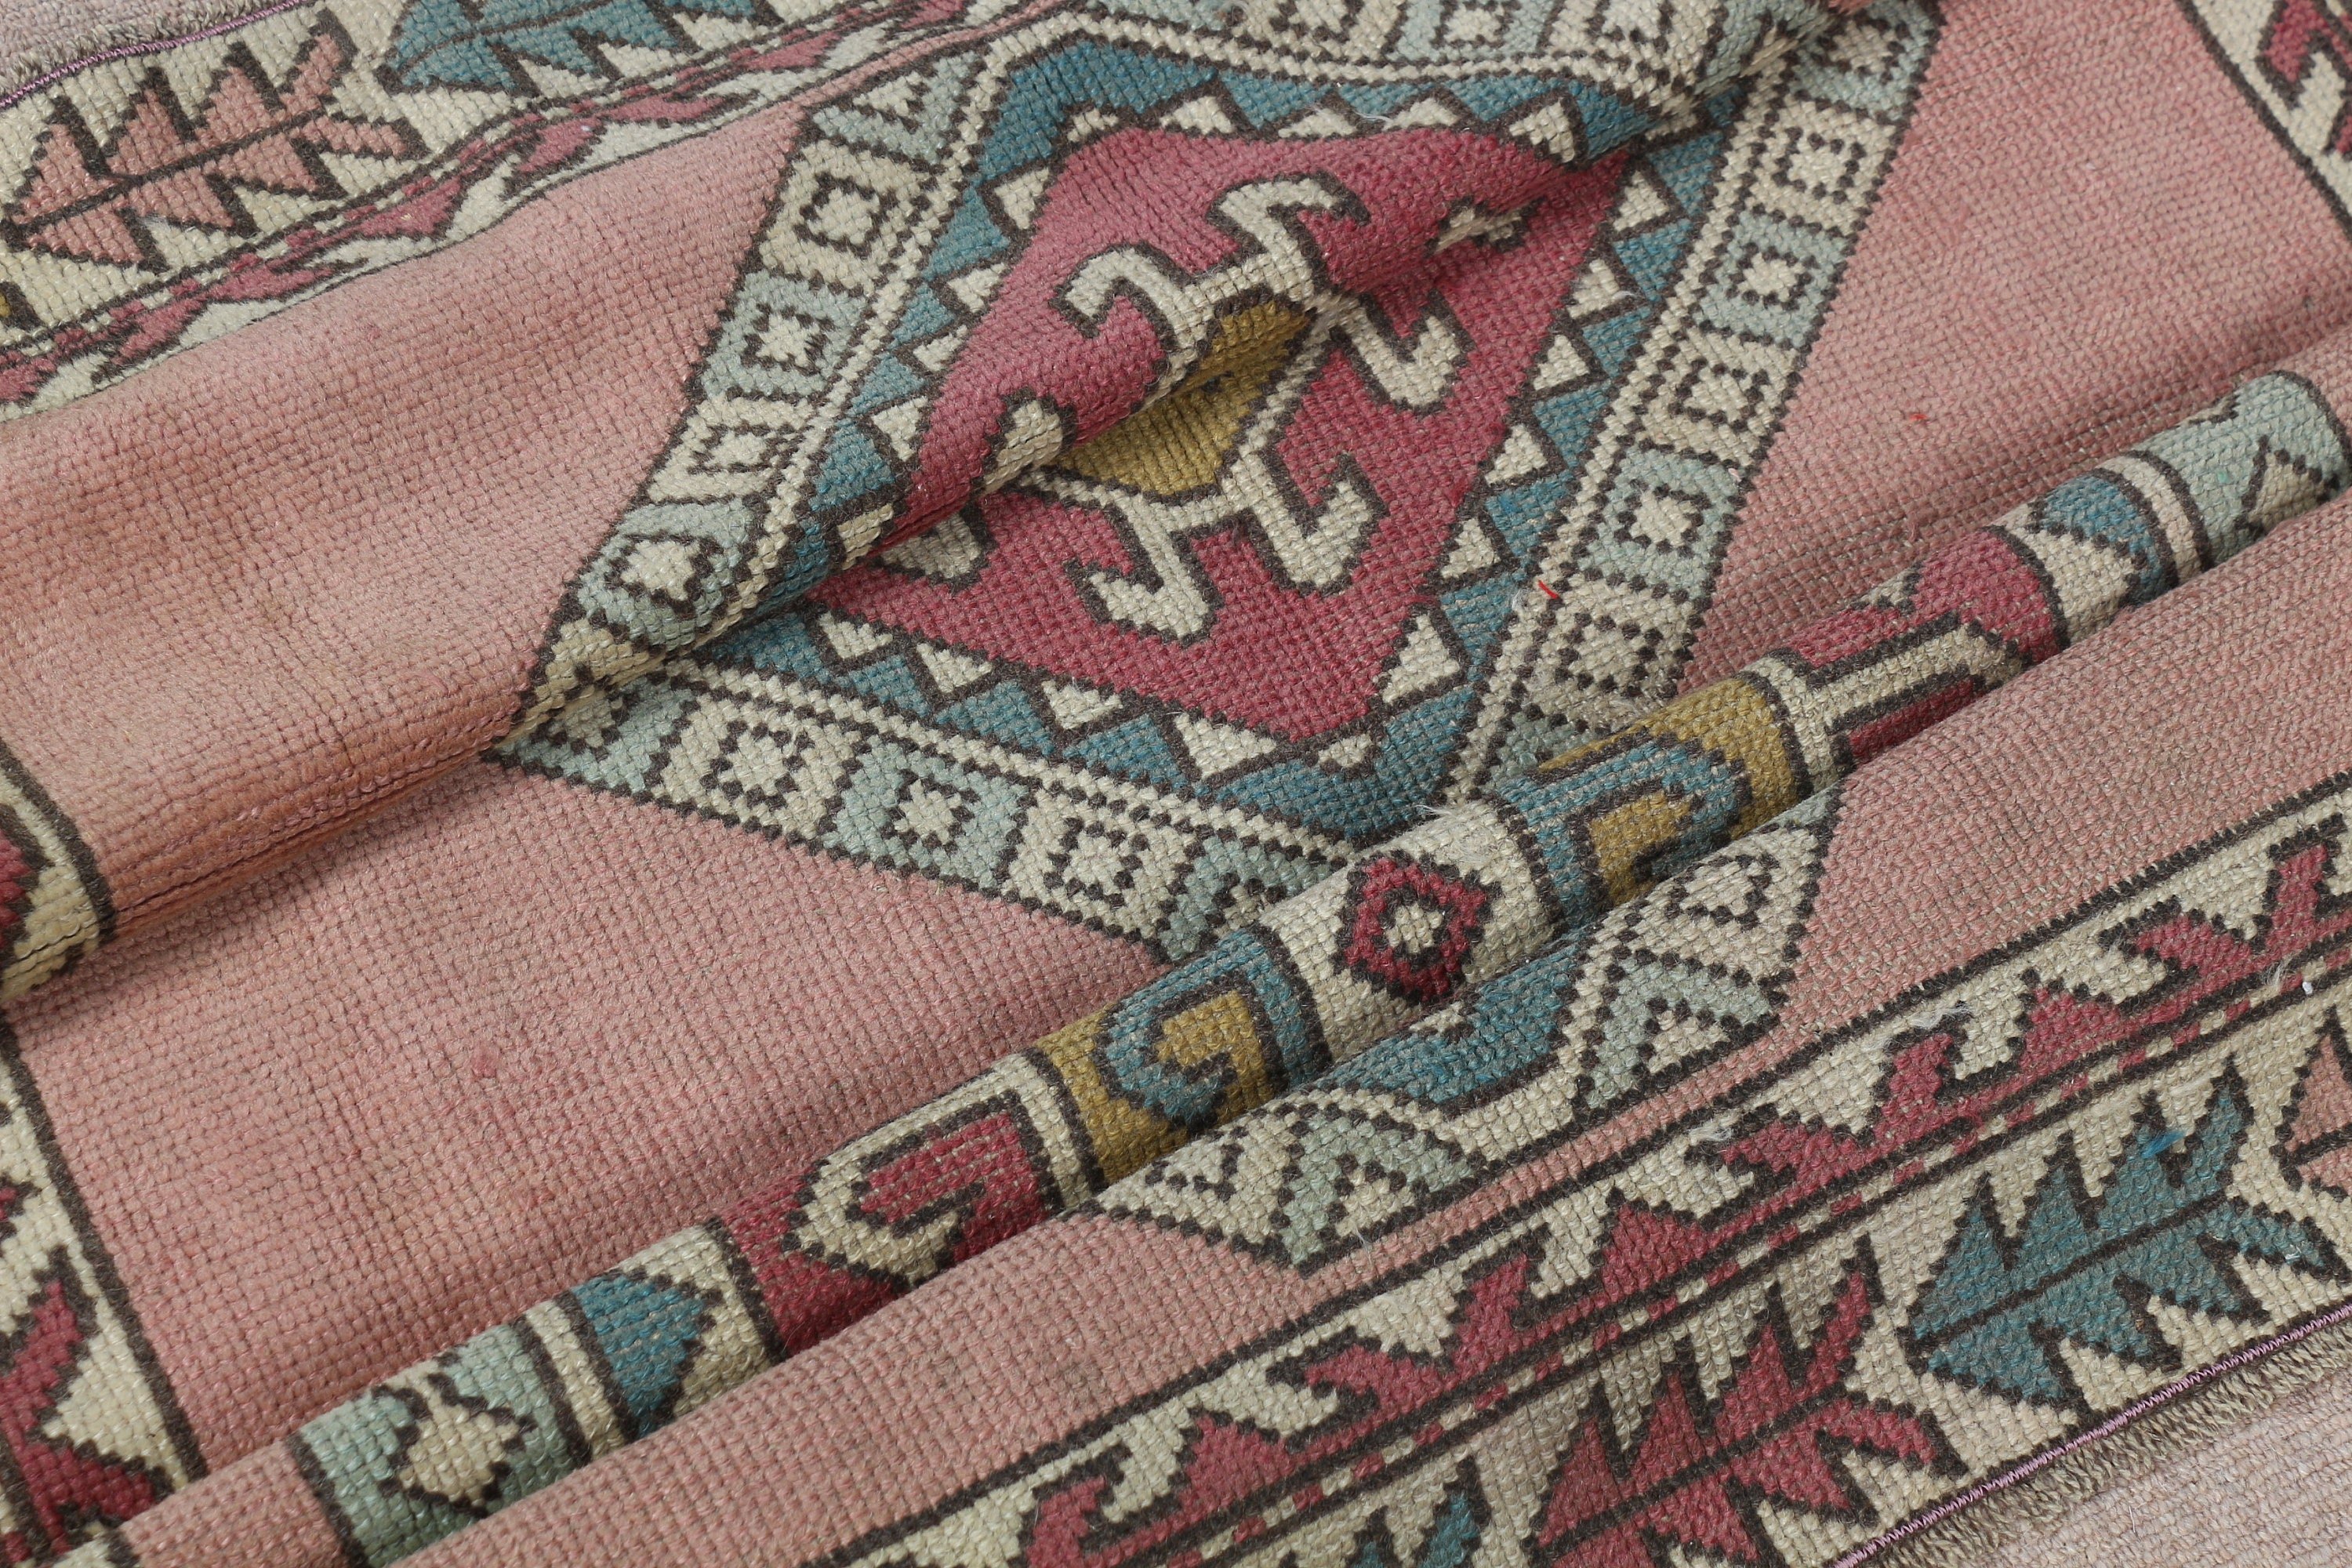 Floor Rugs, Vintage Rug, Pink Oriental Rugs, Turkish Rug, Nursery Rugs, 3.7x5.3 ft Accent Rug, Home Decor Rug, Bedroom Rugs, Entry Rugs